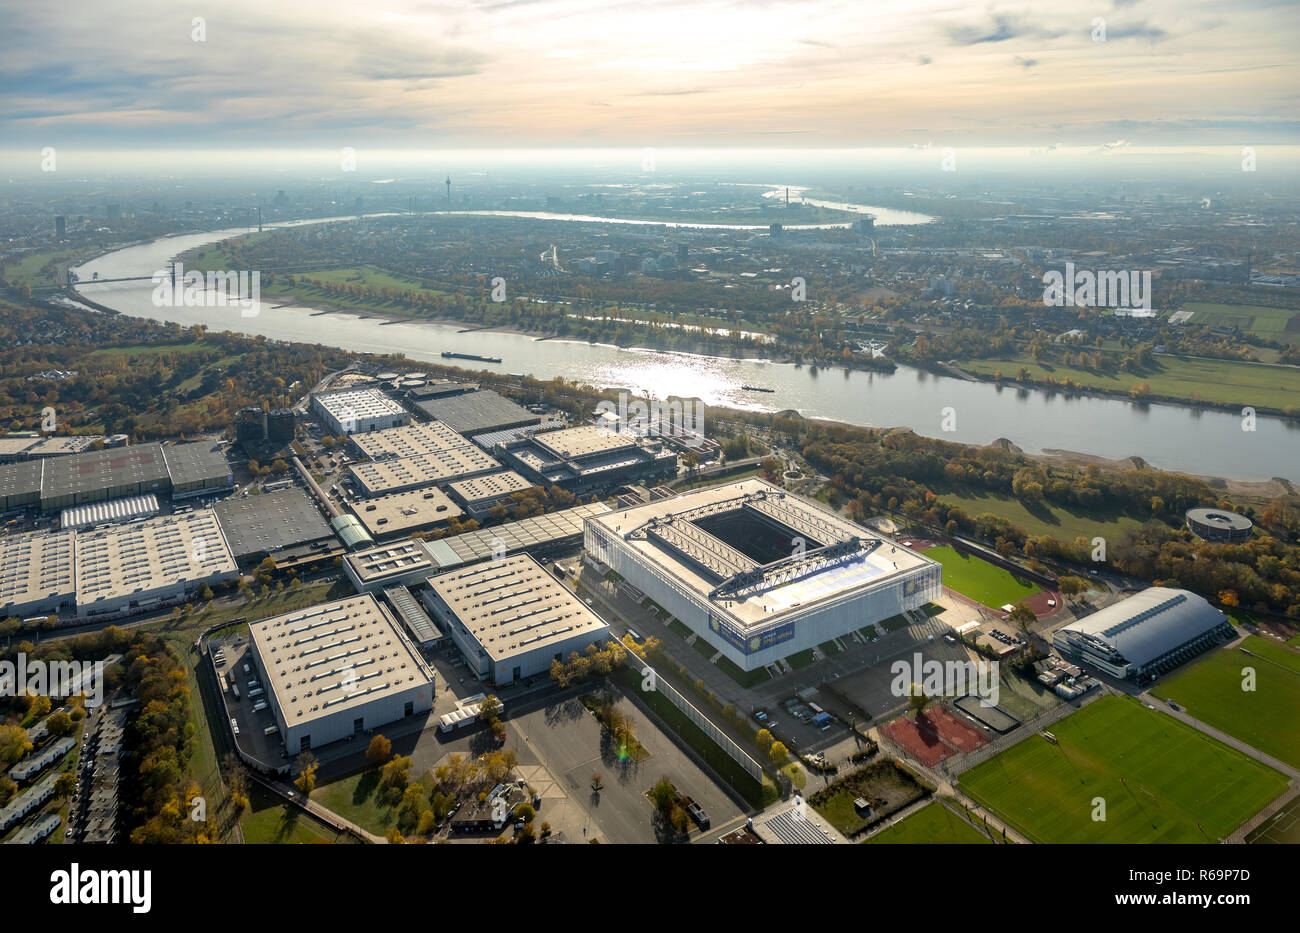 Vista aérea, estadio de fútbol, Spiel-Arena Merkur, Düsseldorf Stockum, Bajo Rhin, Renania del Norte-Westfalia, Alemania Foto de stock